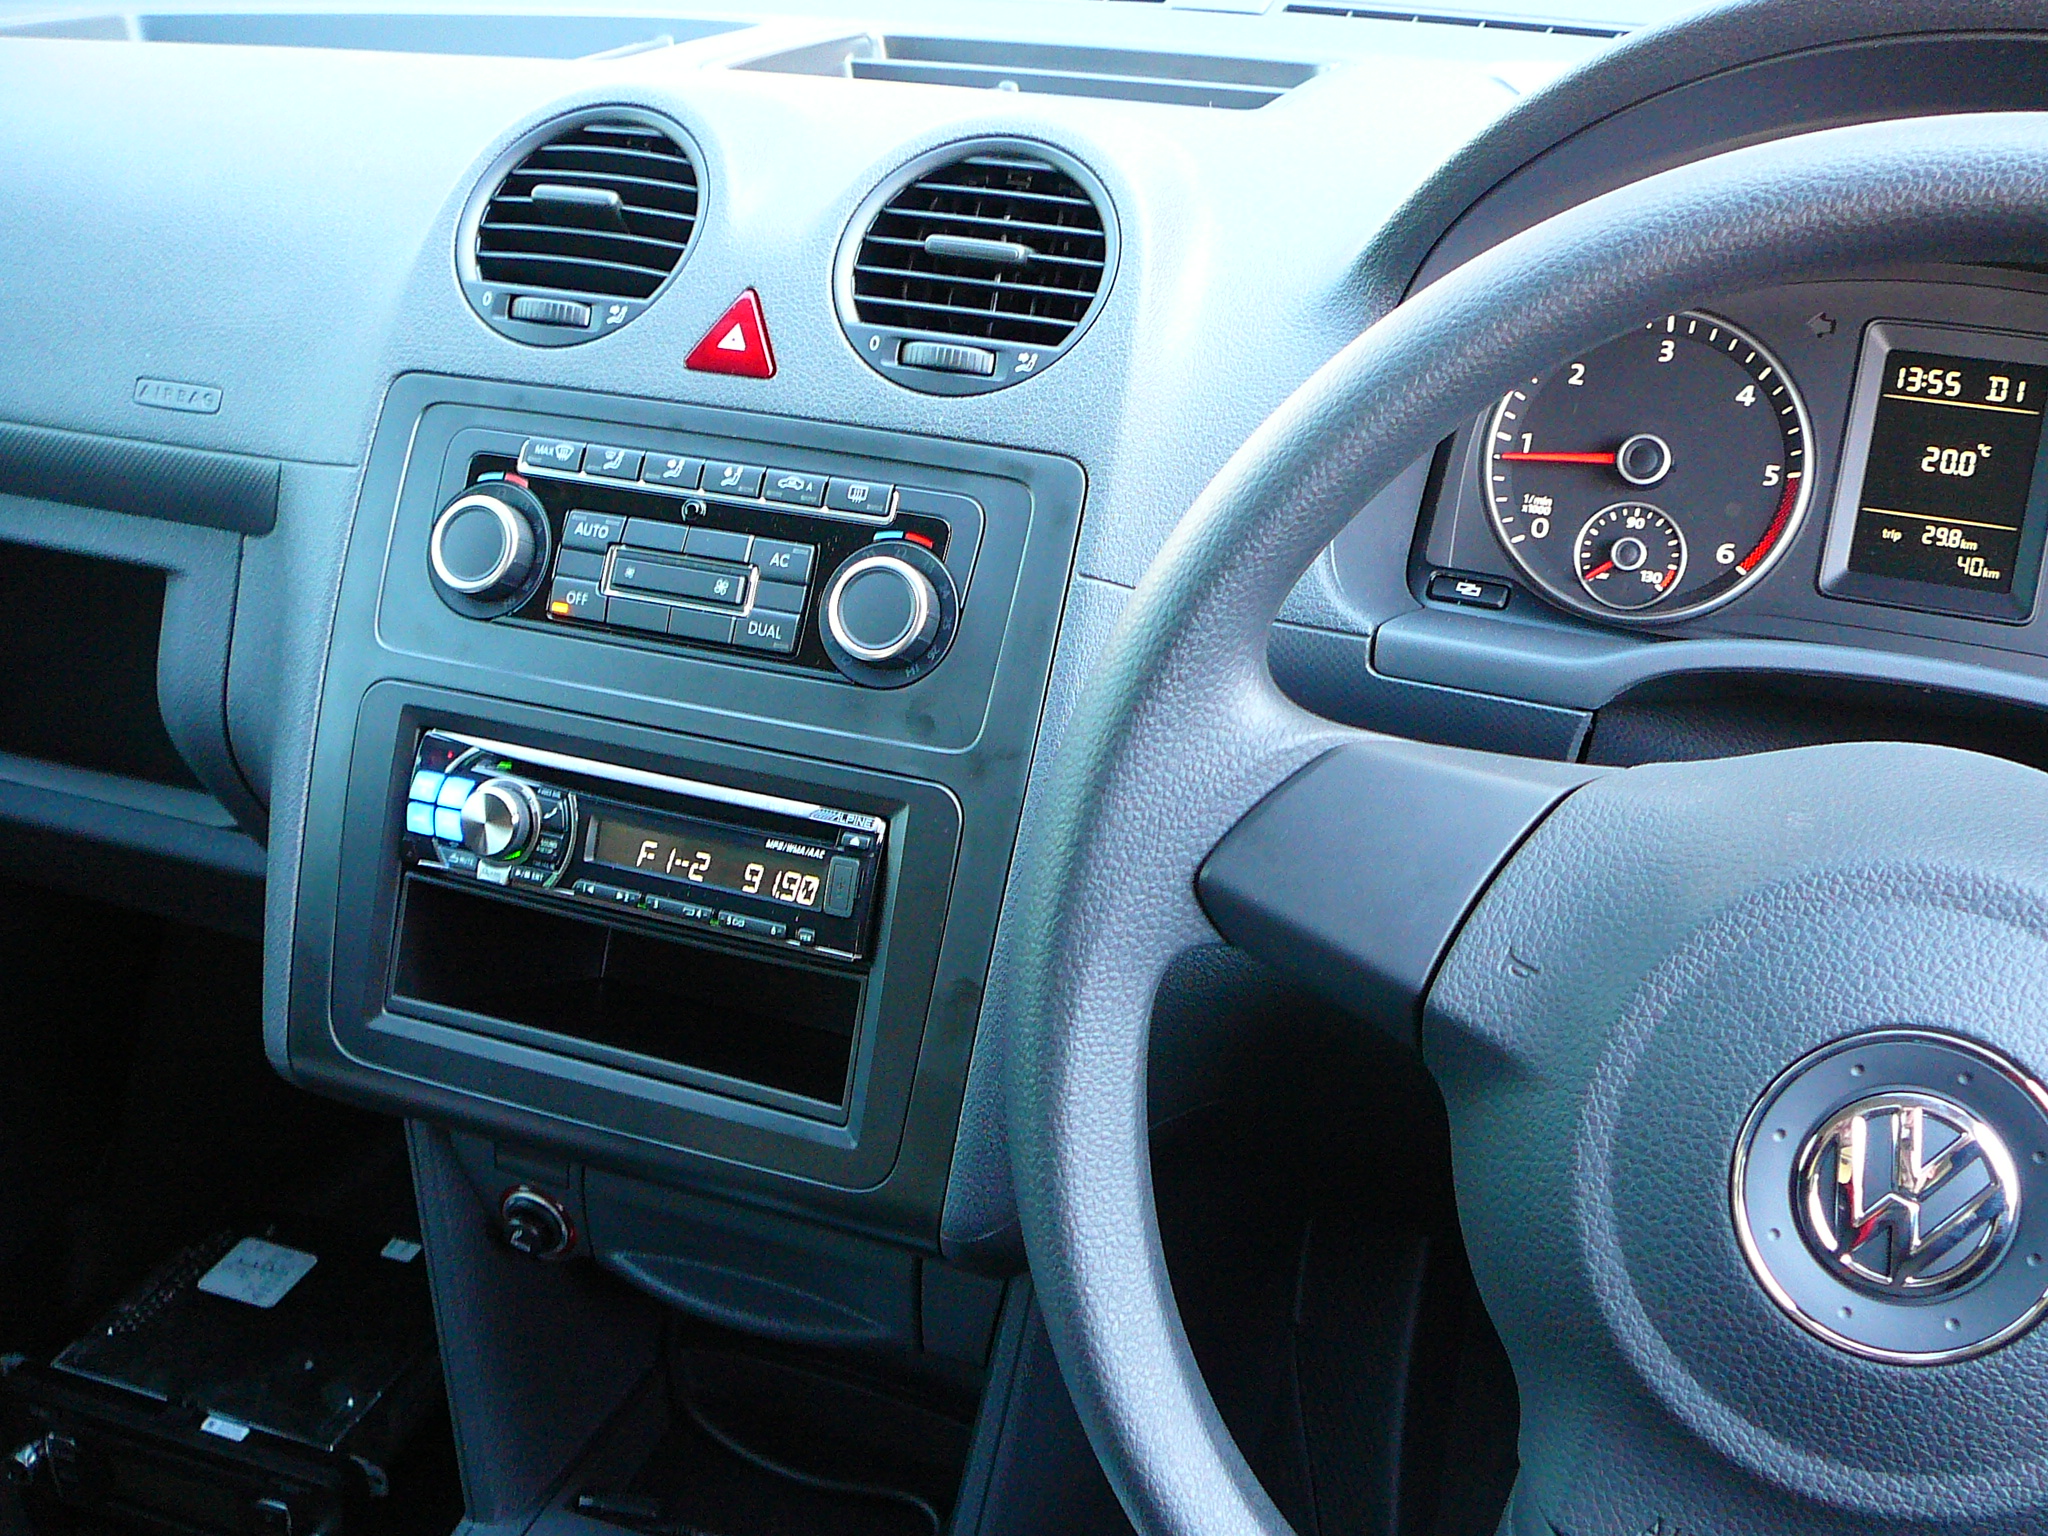 VW Caddy 2011, Alpine Bluetooth Cd Radio